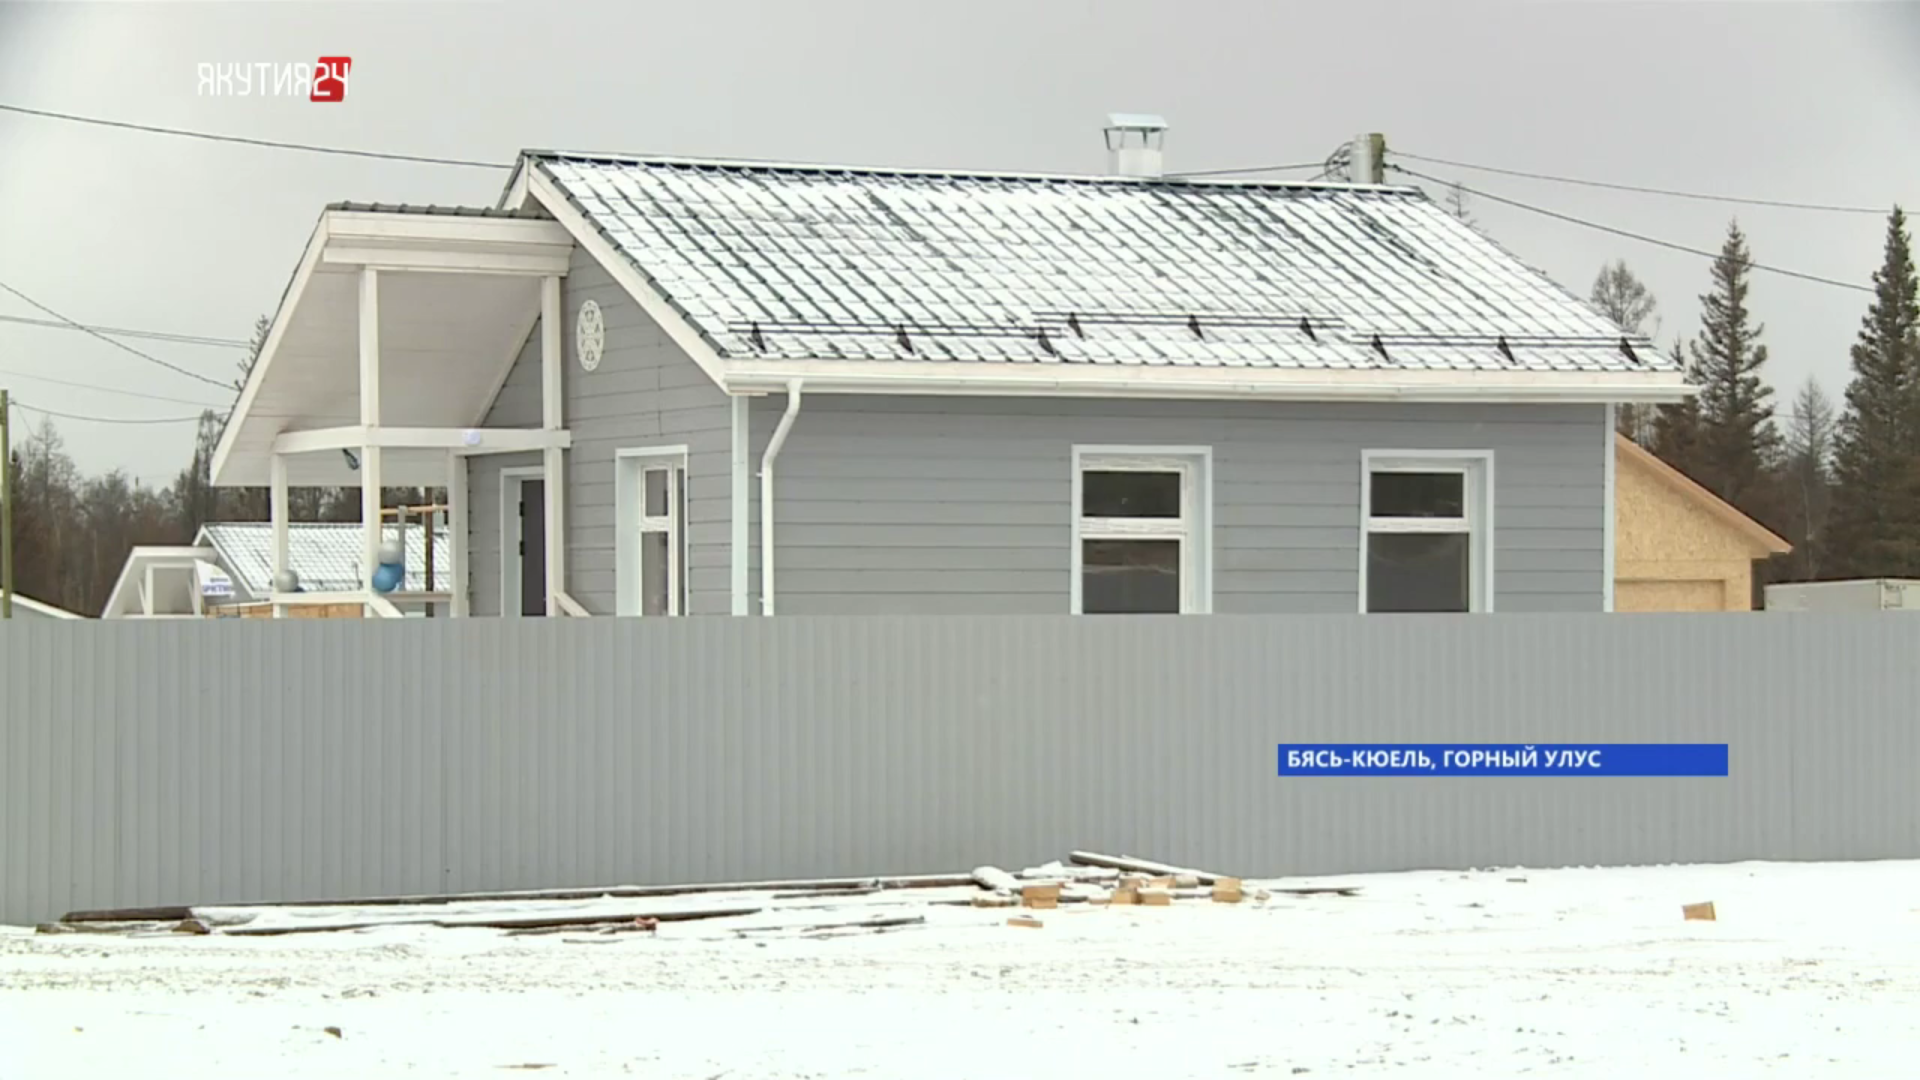 Все 34 дома введут в селе Бясь-Кюель в Якутии 15 октября